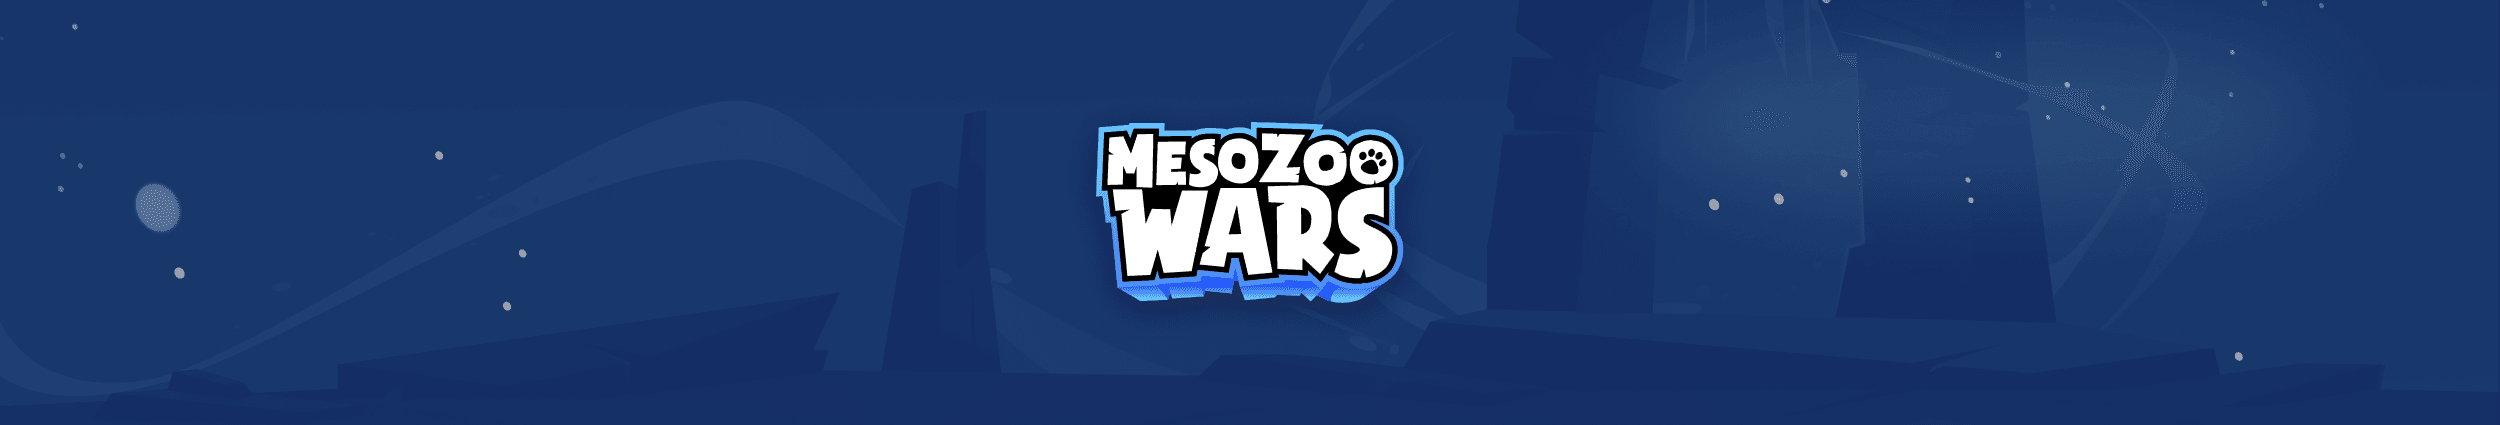 MesoZooWars bannière